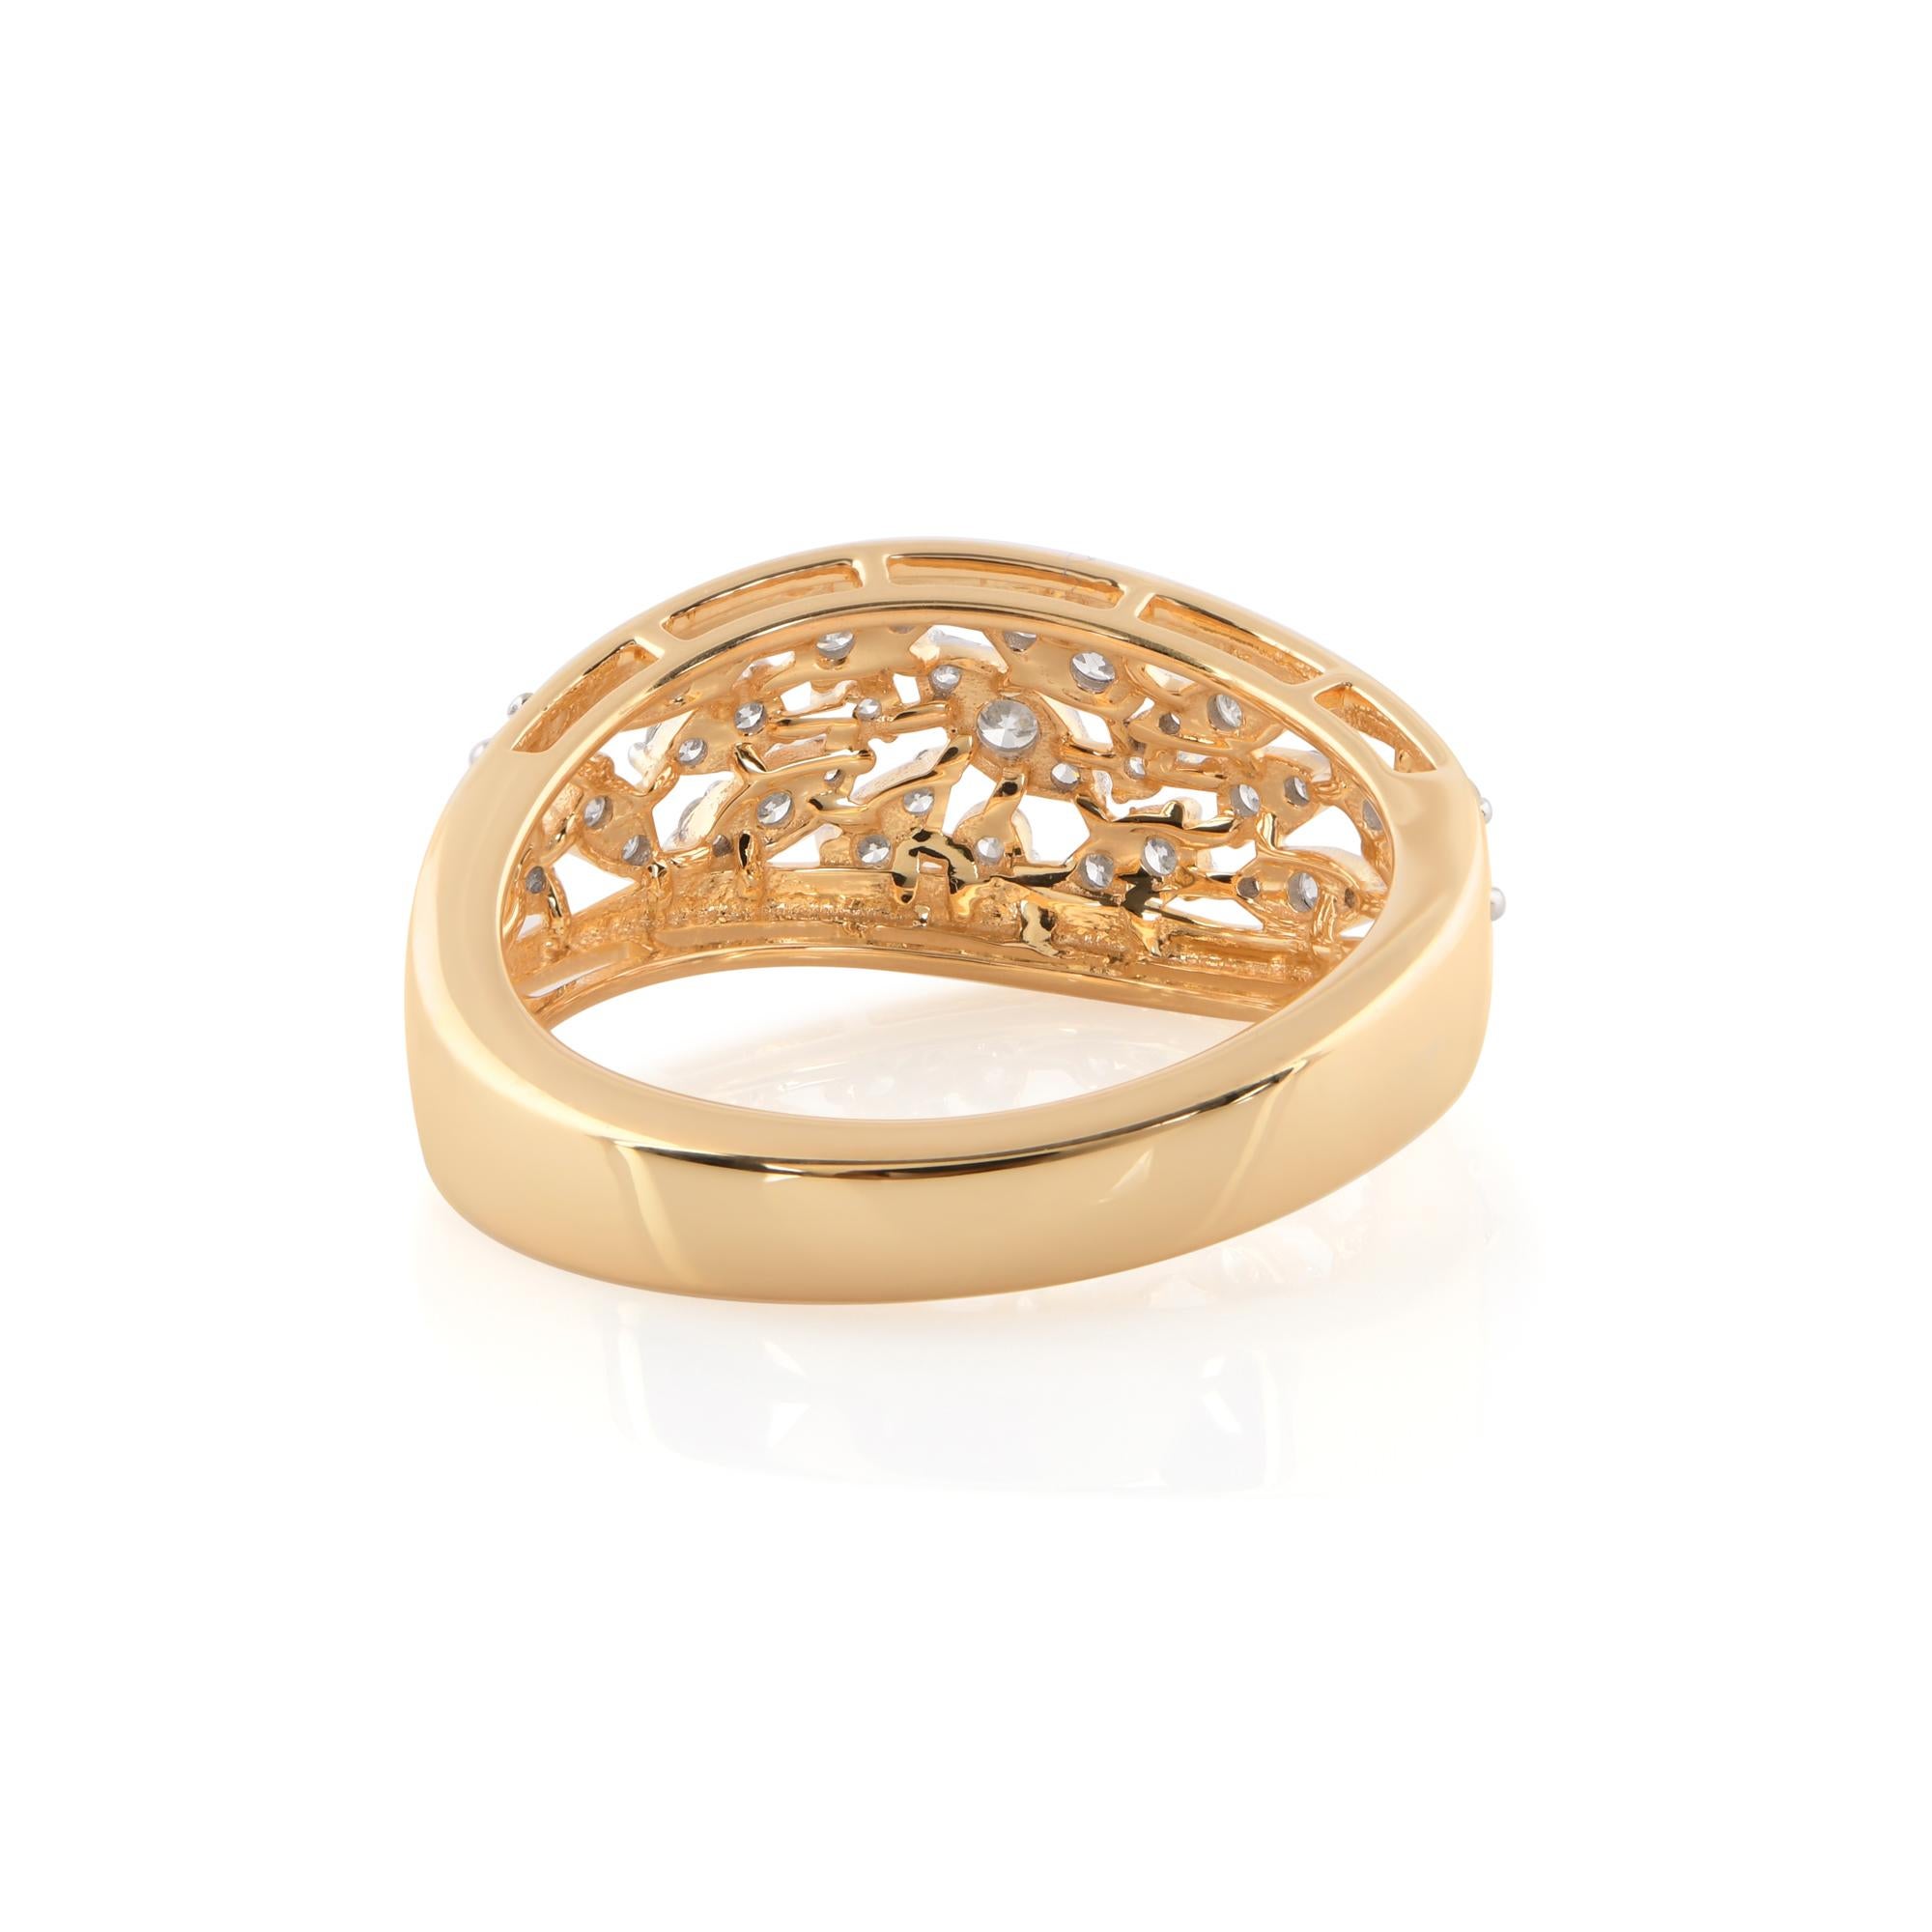 Le diamant est solidement serti dans une magnifique monture en or jaune 14 carats, ajoutant chaleur et richesse au design. Le bracelet en or lustré présente des détails complexes, ajoutant une couche supplémentaire de sophistication à la pièce. La